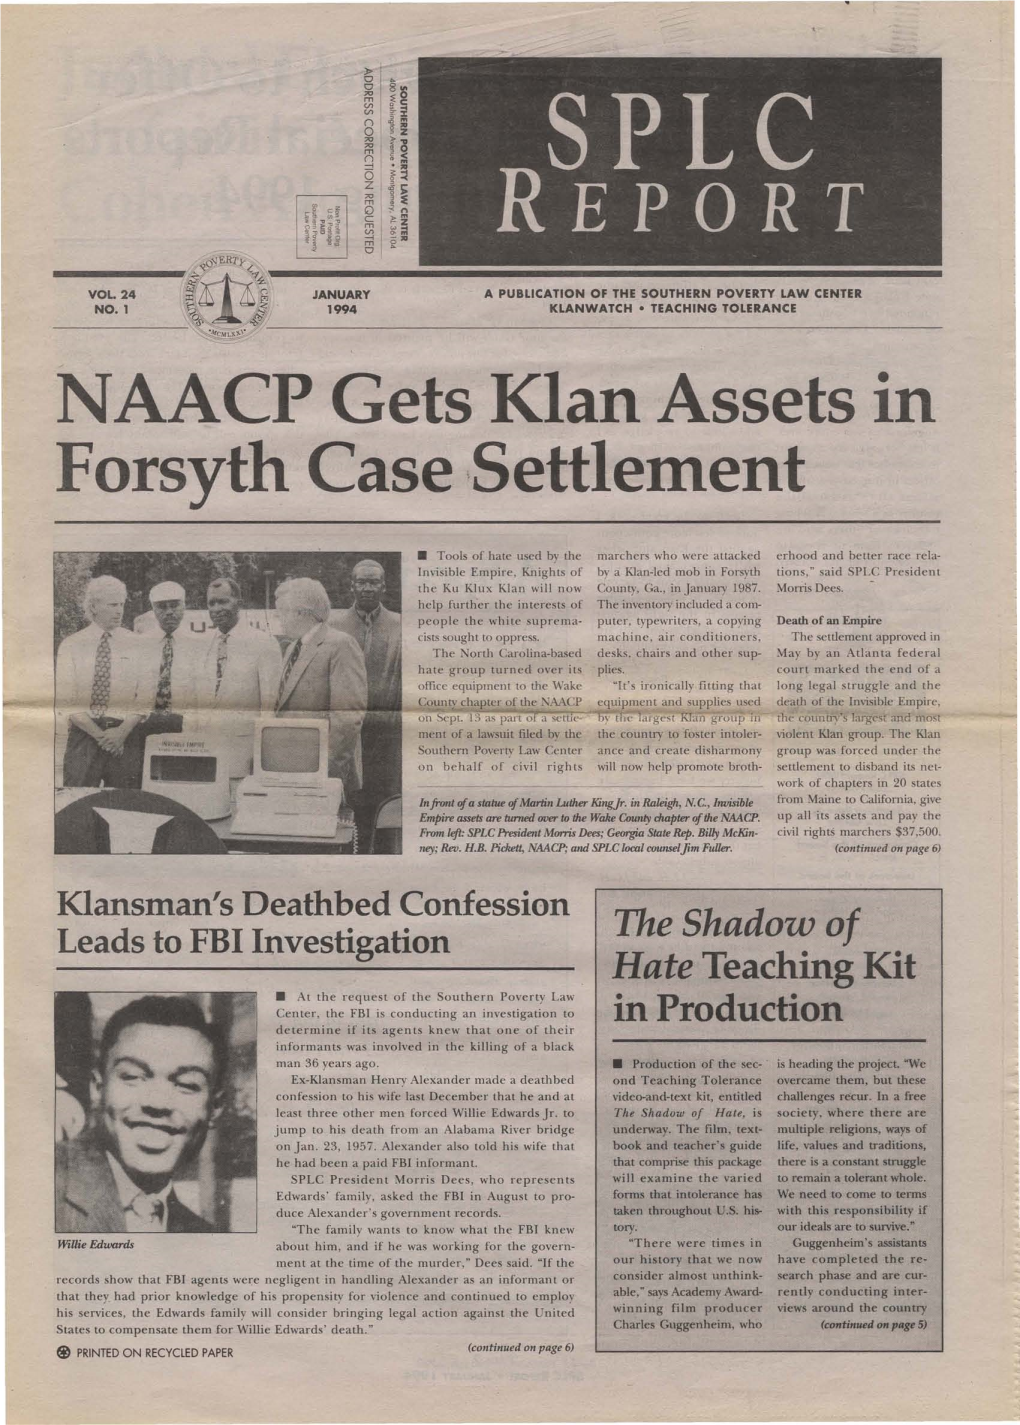 NAACP Gets Klan Assets in Forsyth Case ,Settlelllent